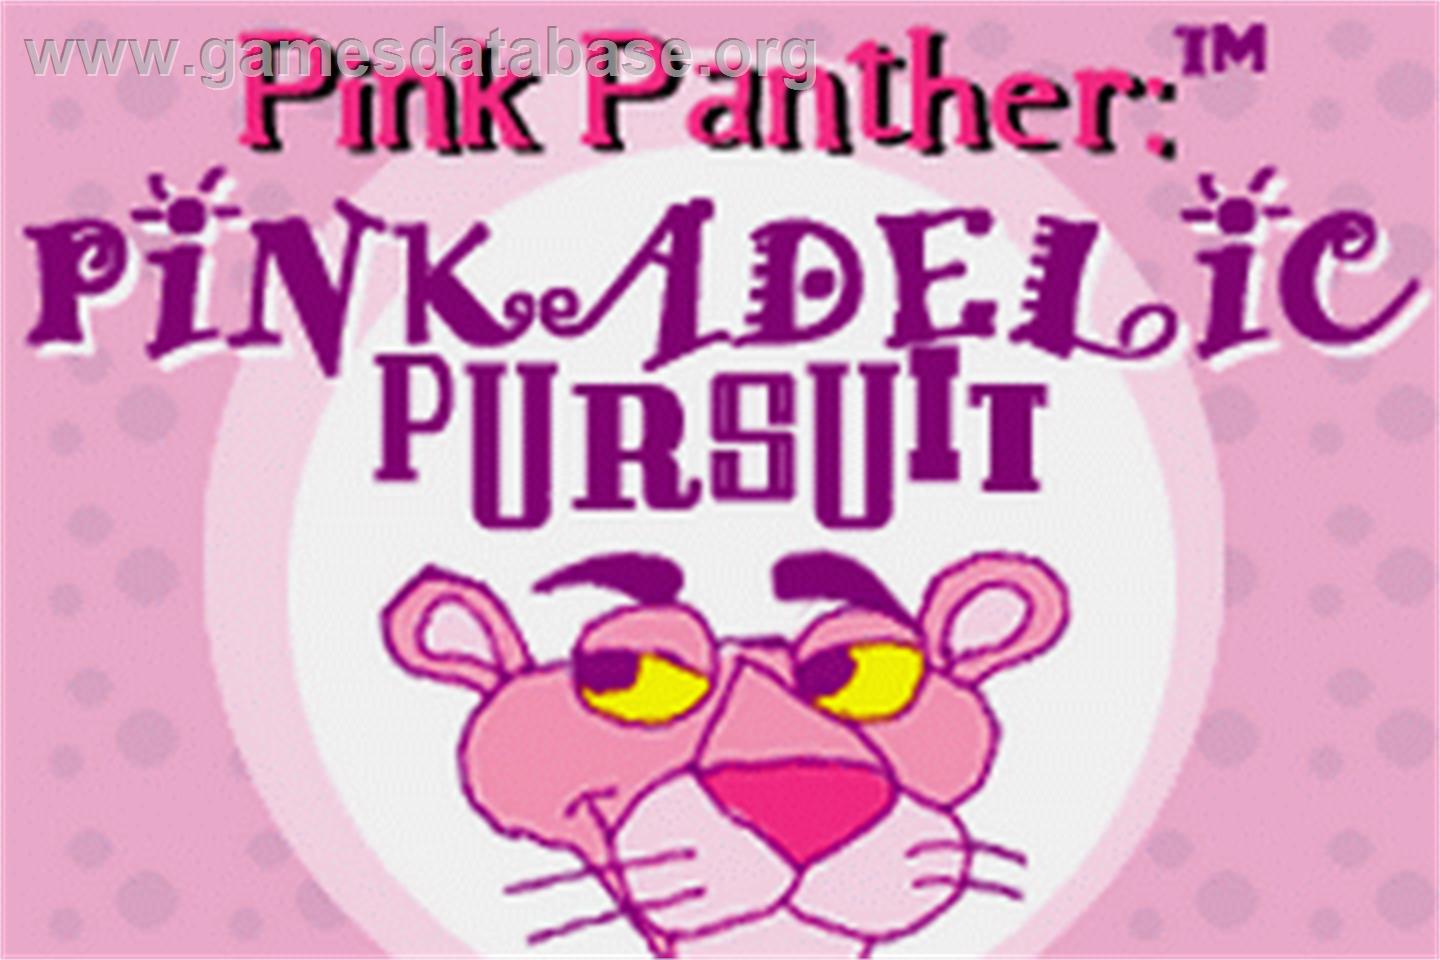 Pink Panther: Pinkadelic Pursuit - Nintendo Game Boy Advance - Artwork - Title Screen